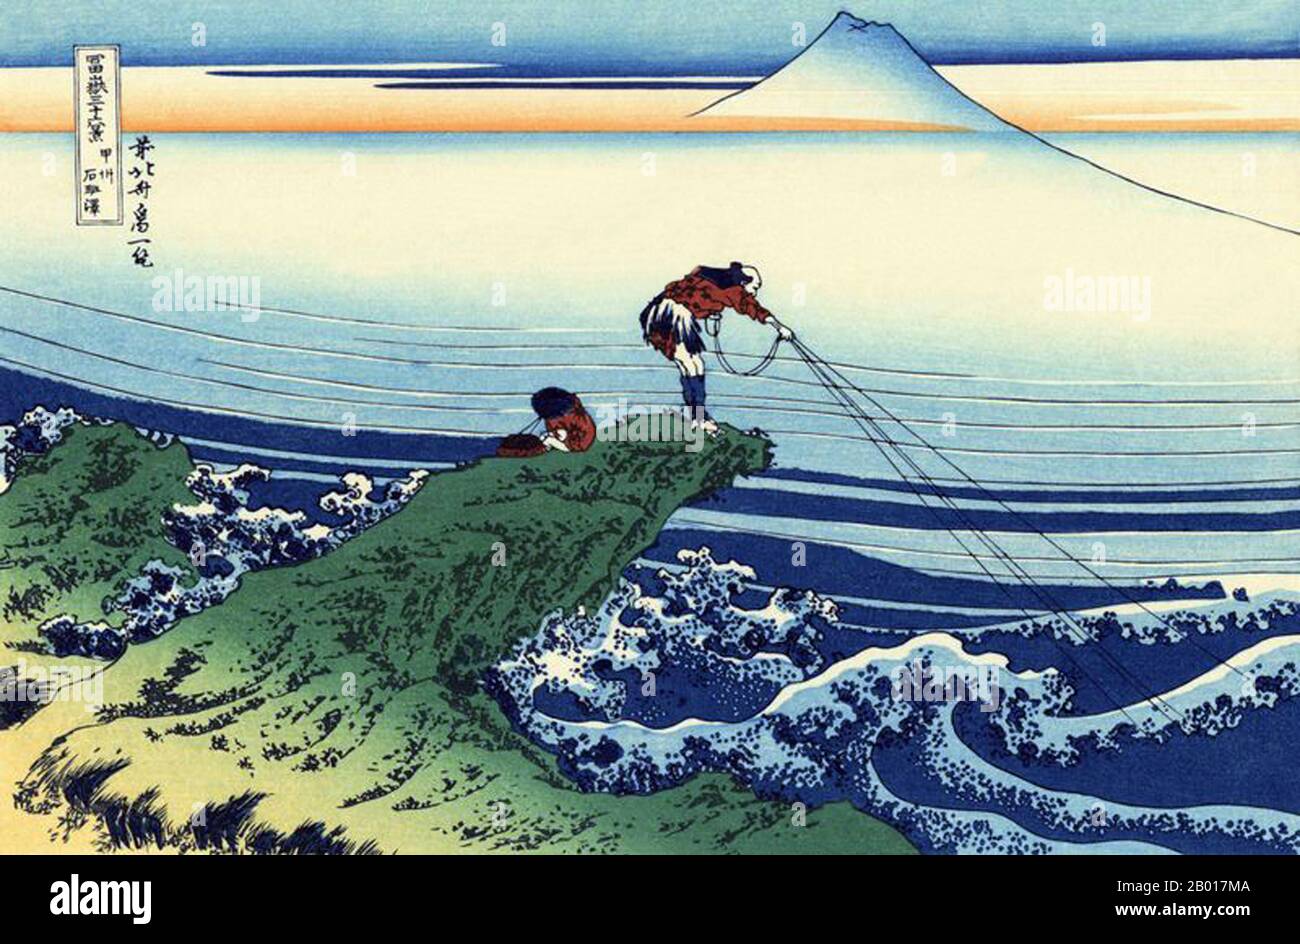 Japon: «Kajikazawa dans la province de Kai».Imprimé Ukiyo-e en blocs de bois de la série «trente-six vues du Mont Fuji» de Katsushika Hokusai (31 octobre 1760 - 10 mai 1849), c.1830. «36 vues du Mont Fuji» est une série «ukiyo-e» de grandes gravures sur bois de l'artiste Katsushika Hokusai.La série représente le Mont Fuji dans différentes saisons et conditions météorologiques à partir de divers endroits et distances.Il se compose en fait de 46 tirages créés entre 1826 et 1833.Les 36 premiers ont été inclus dans la publication originale et, en raison de leur popularité, 10 autres ont été ajoutés après la publication originale. Banque D'Images